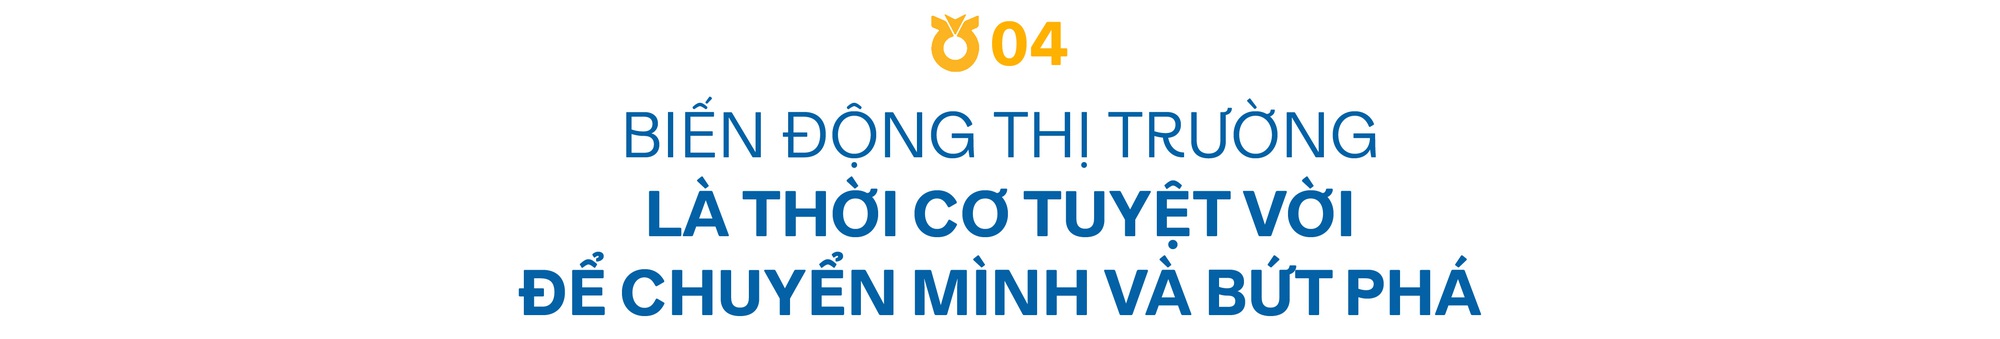 Chứng khoán NHSV và hành trình kiến tạo văn hoá đầu tư cho người Việt - Ảnh 9.